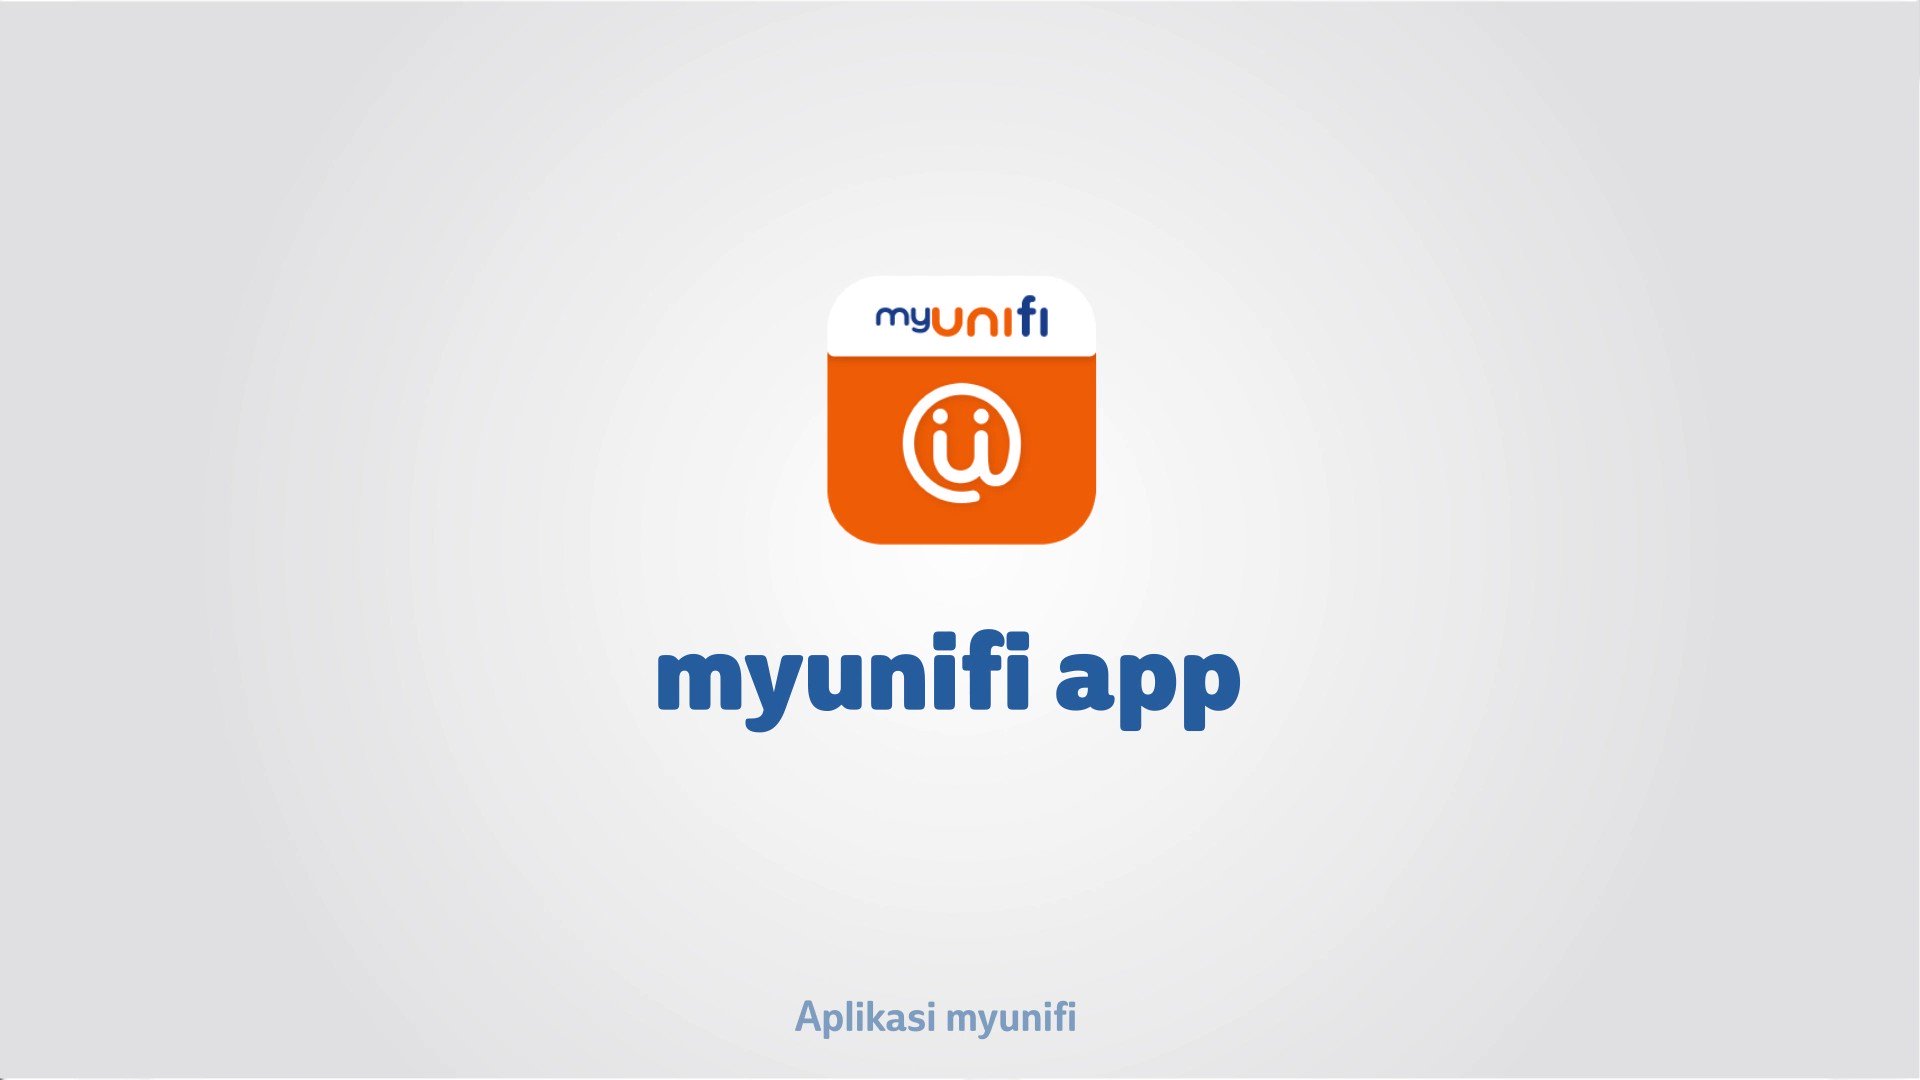 Myunifi app